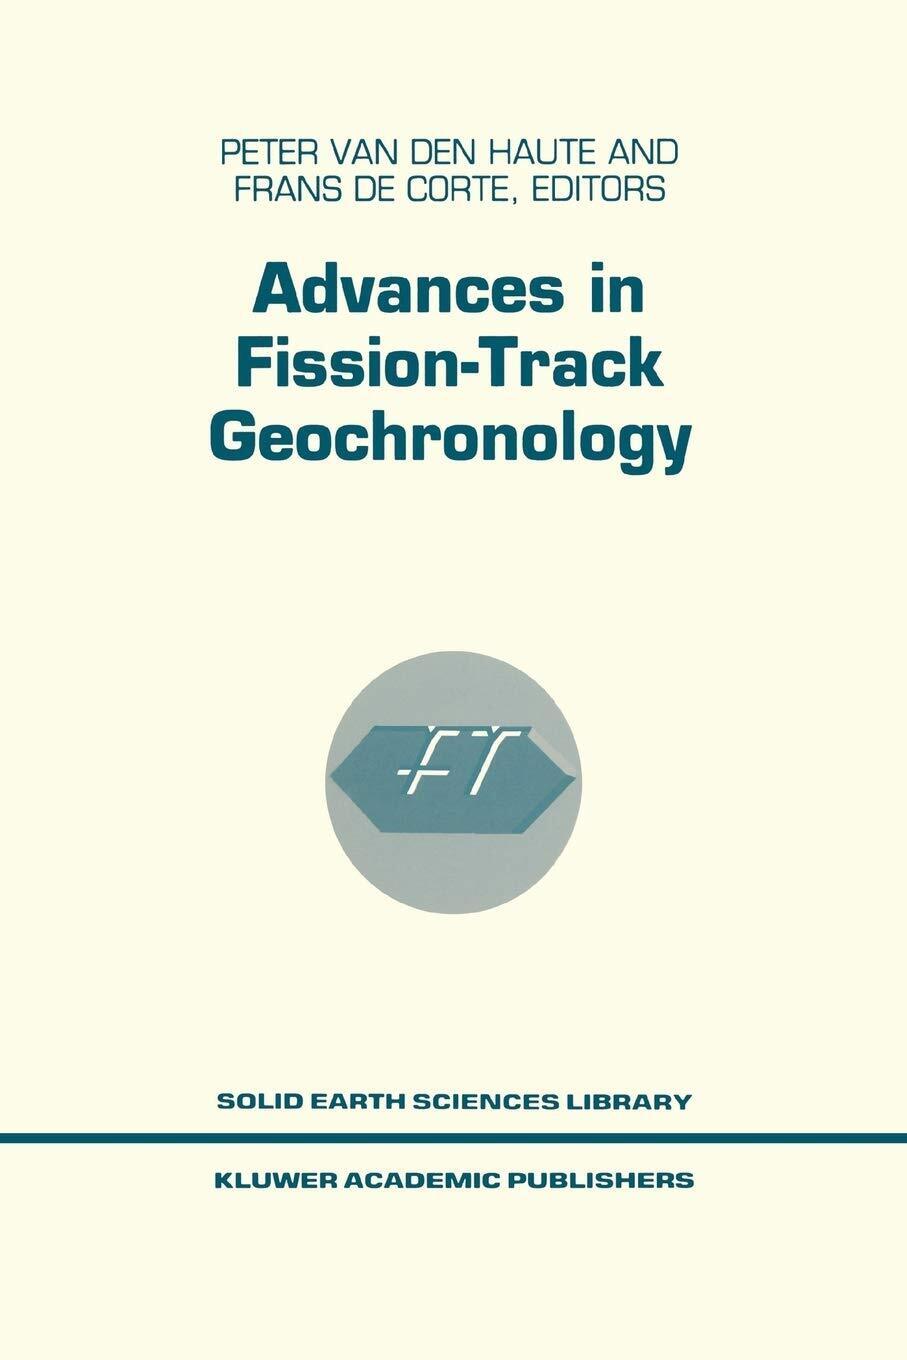 Advances in Fission-track Geochronology - P. Haute - Springer, 2010 libro usato